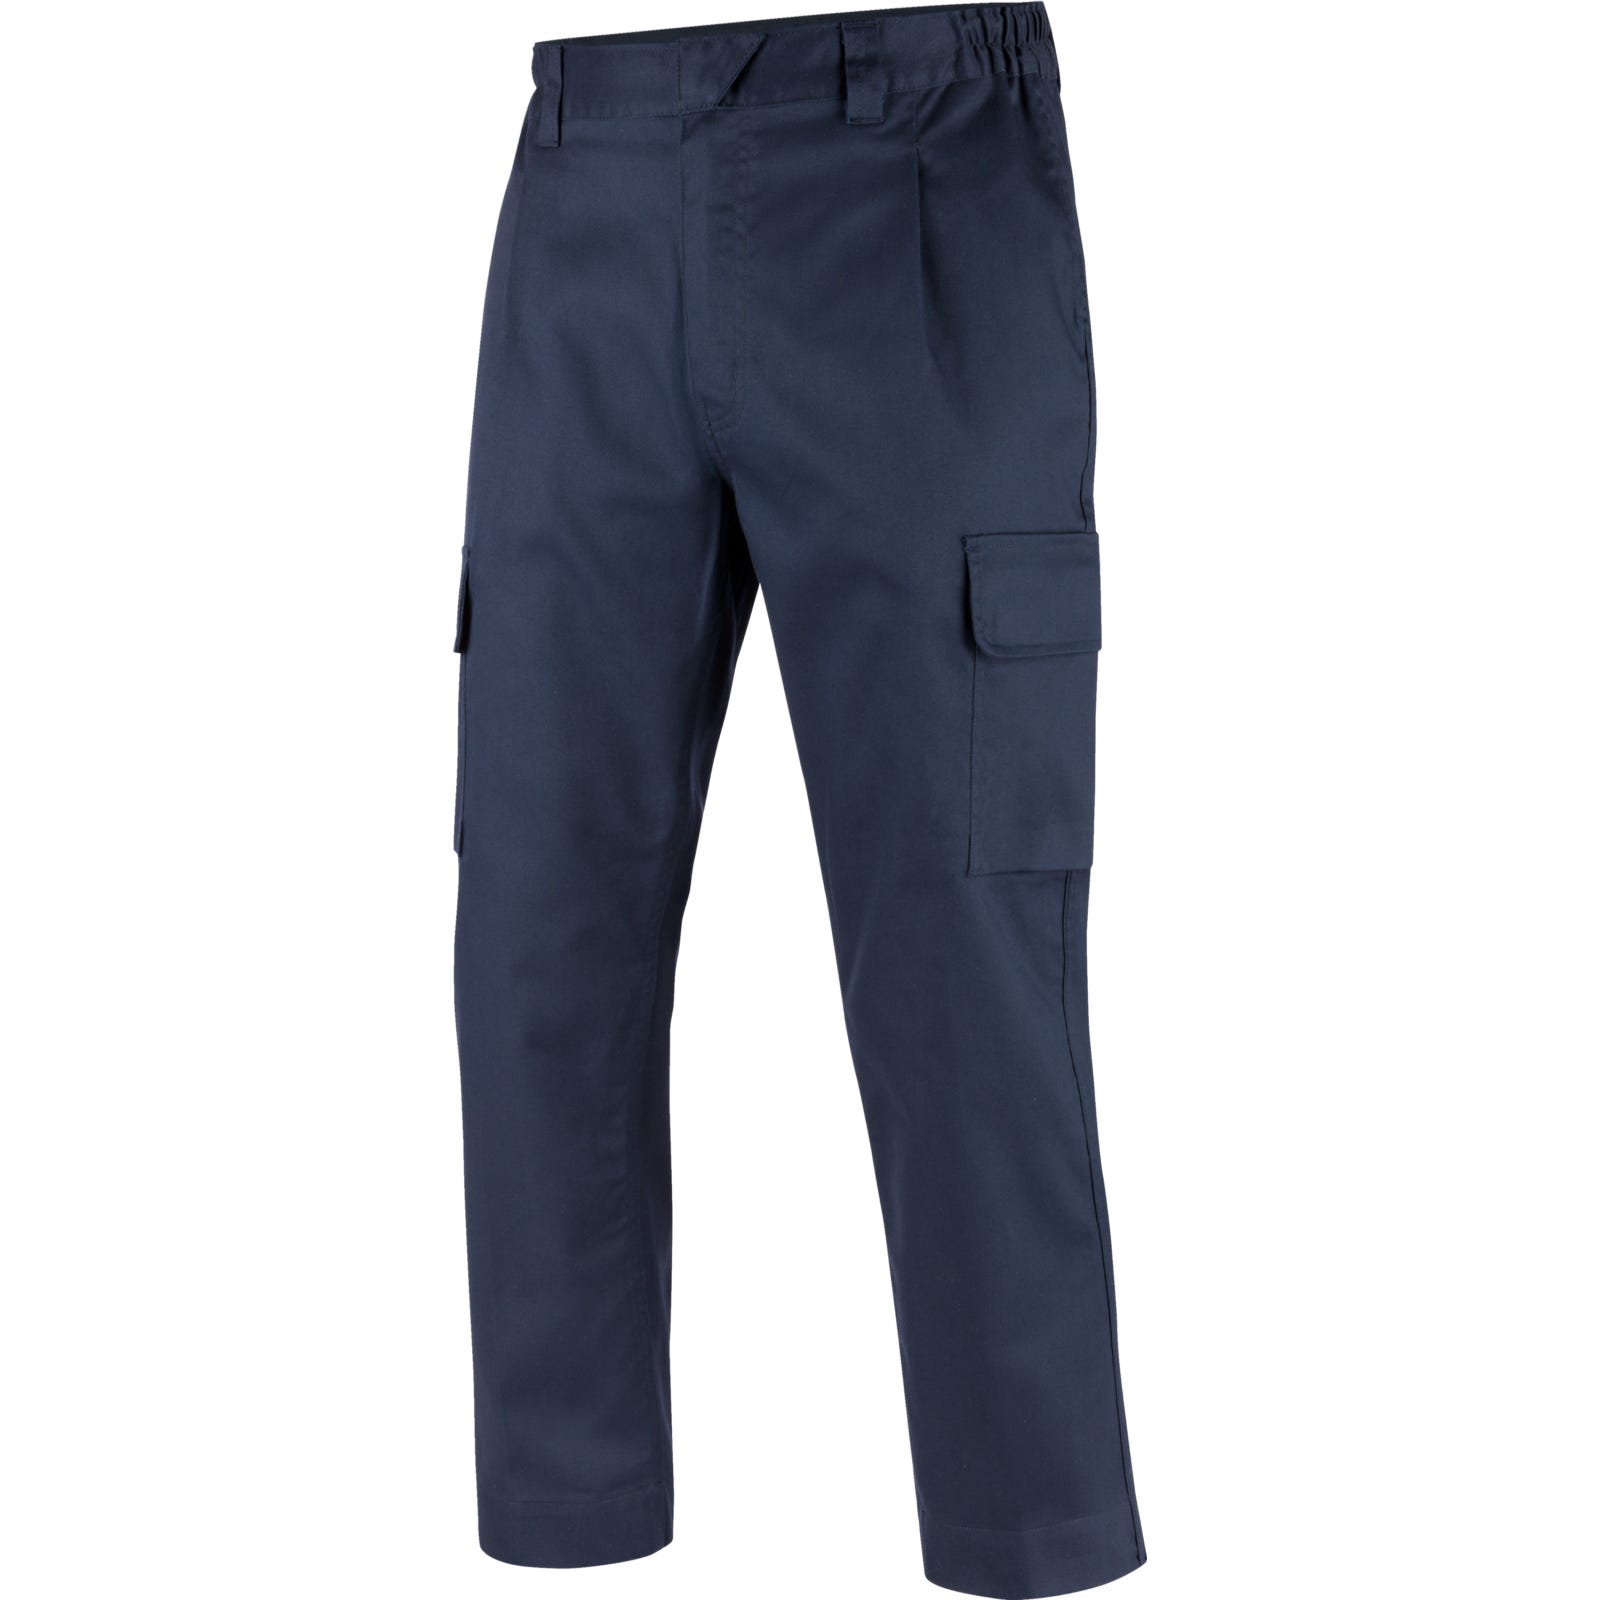 Pantalon de travail Soudeur Ignifugé EN 11611, EN 11612 Würth MODYF marine  - Taille S